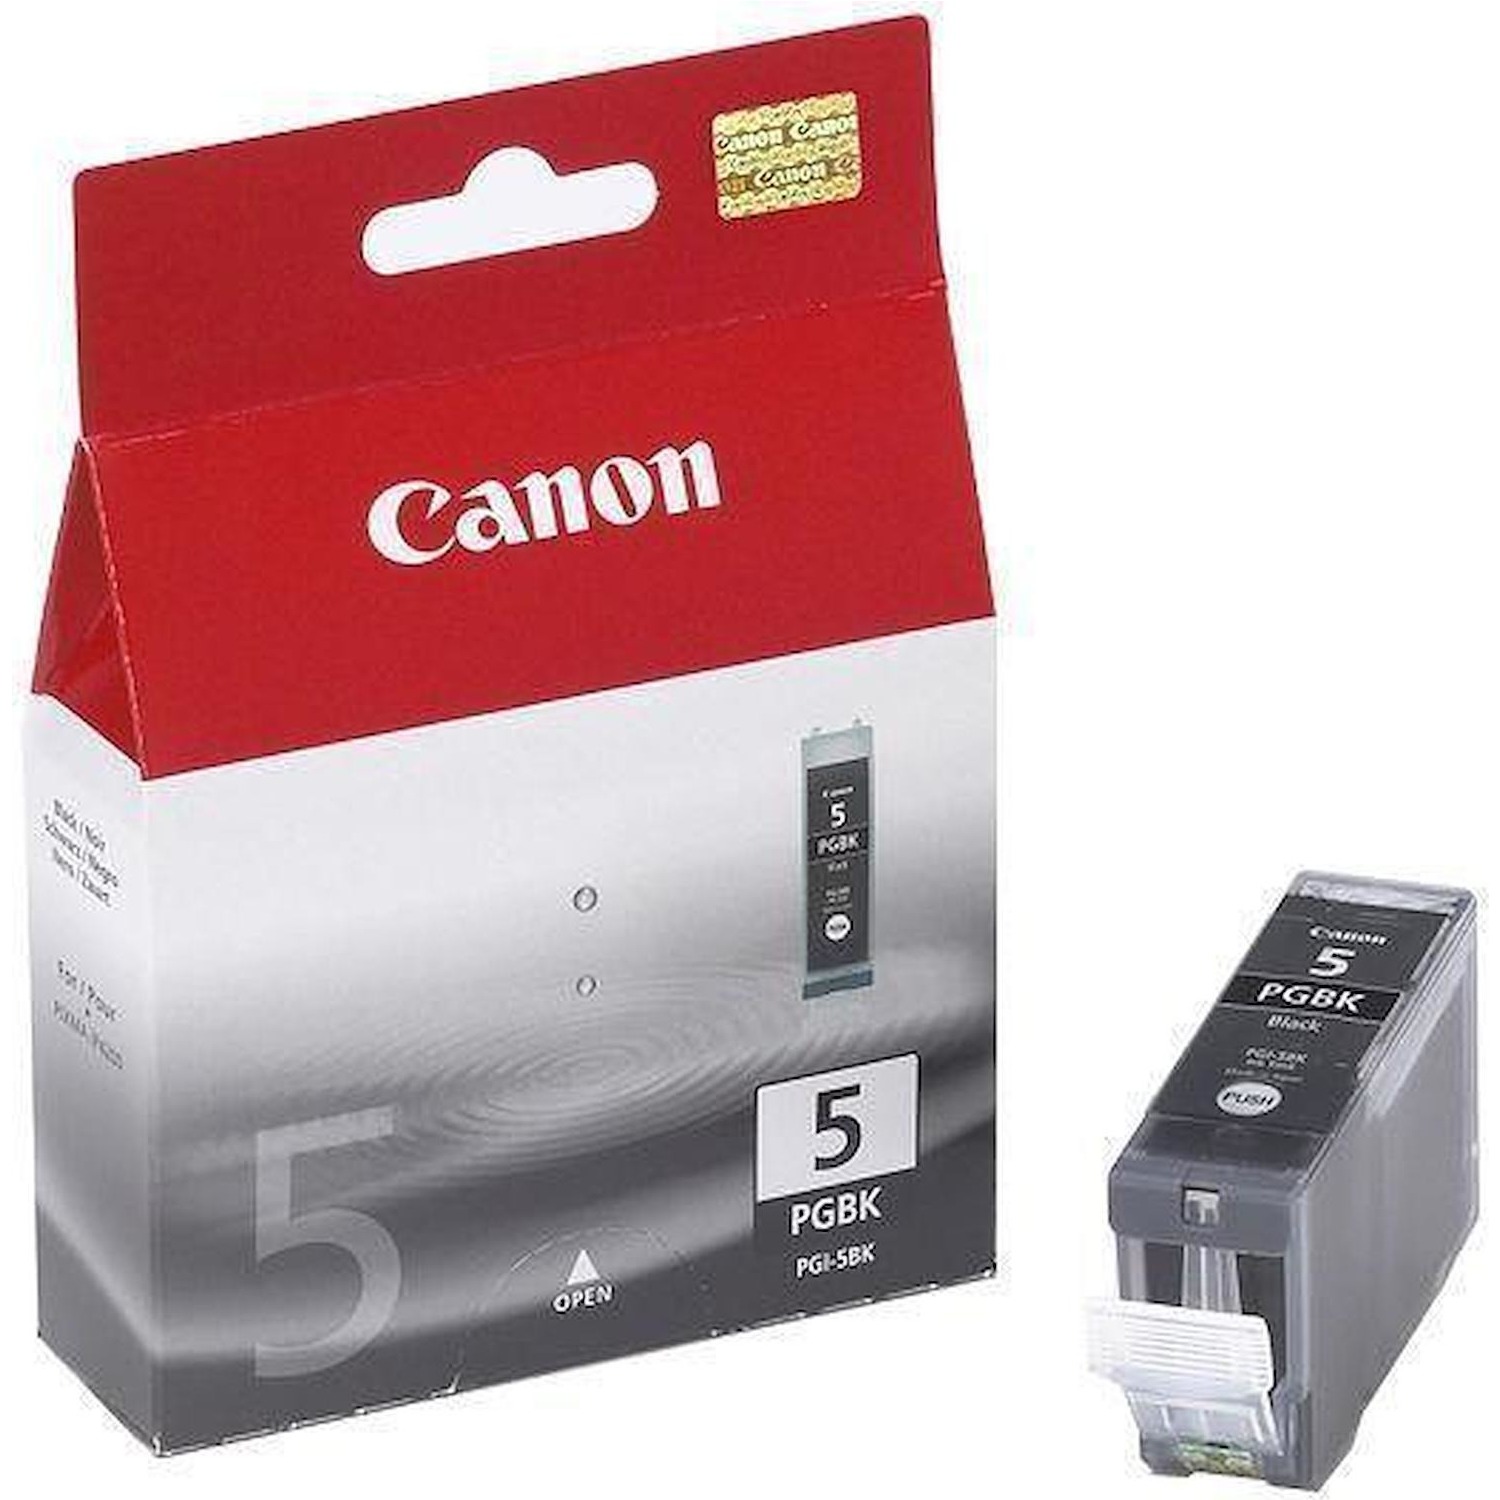 Immagine per Cartuccia Canon nero PGI 5                        per IP3300 P5200 MP500  MP970 da DIMOStore